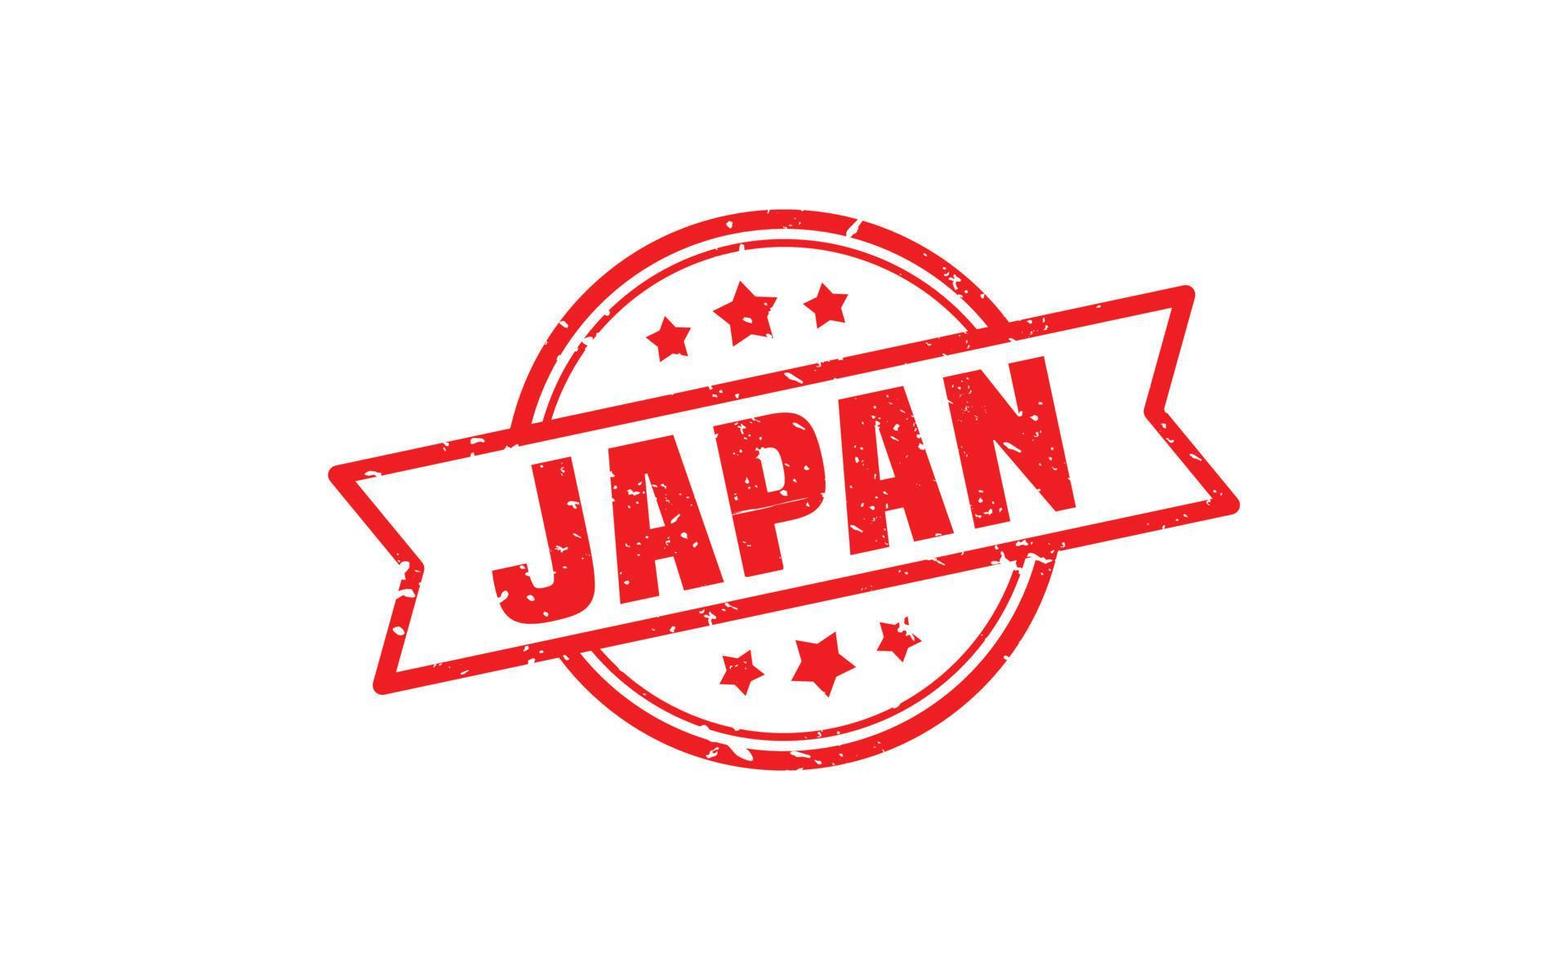 japanischer Stempelgummi mit Grunge-Stil auf weißem Hintergrund vektor